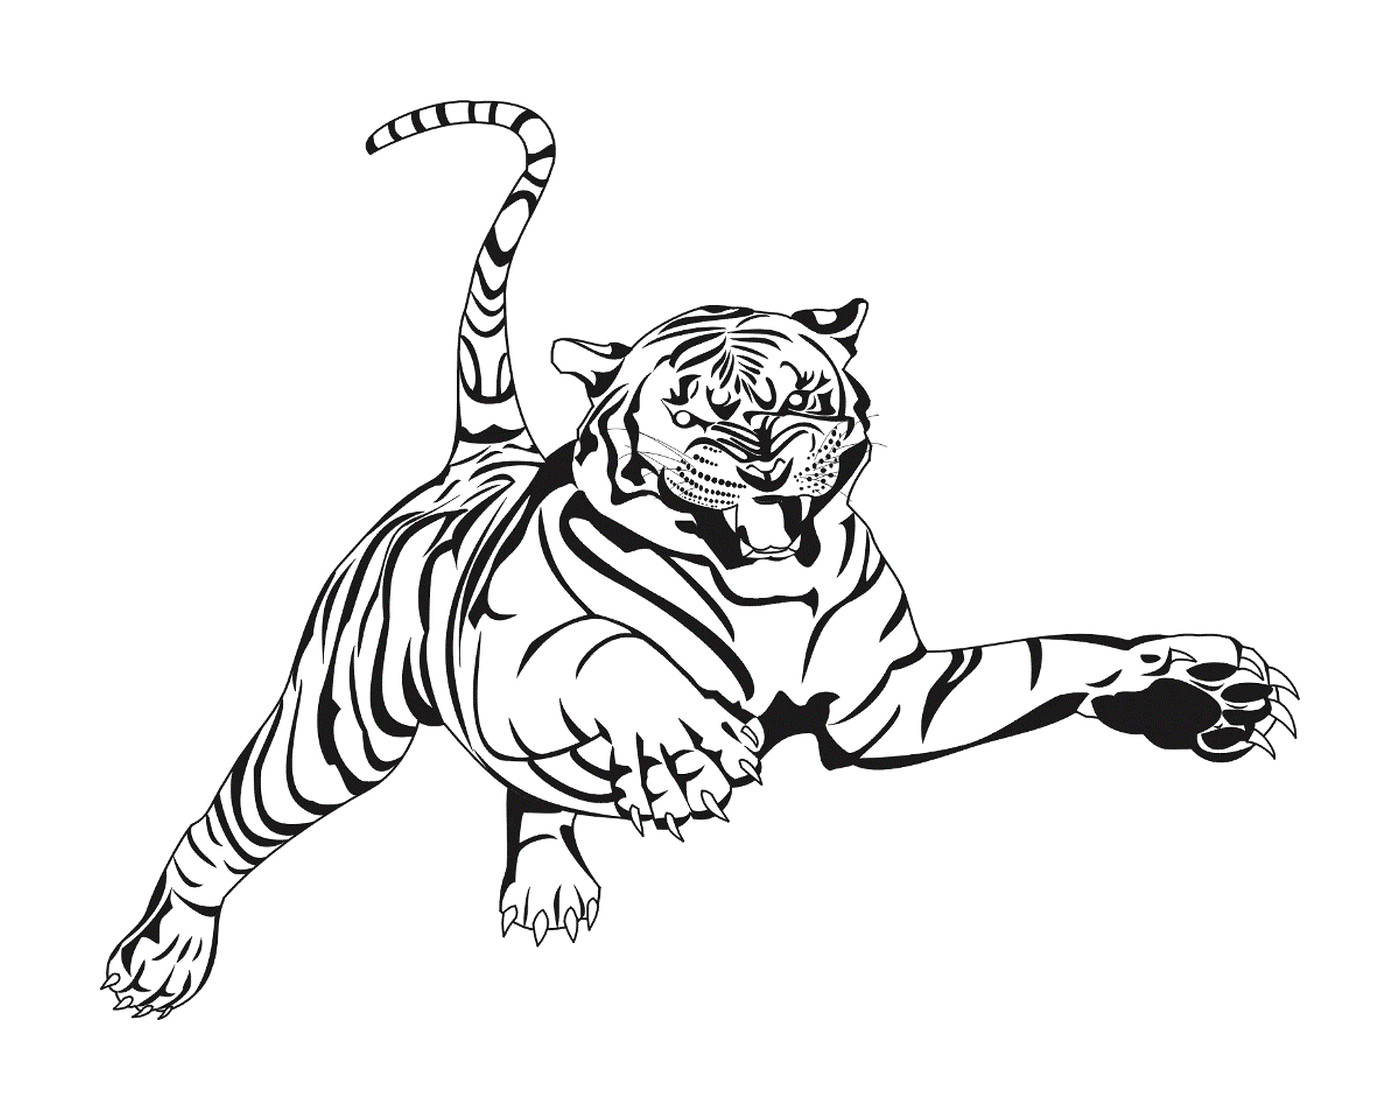  एक कूद के बीच में एक बाघ 